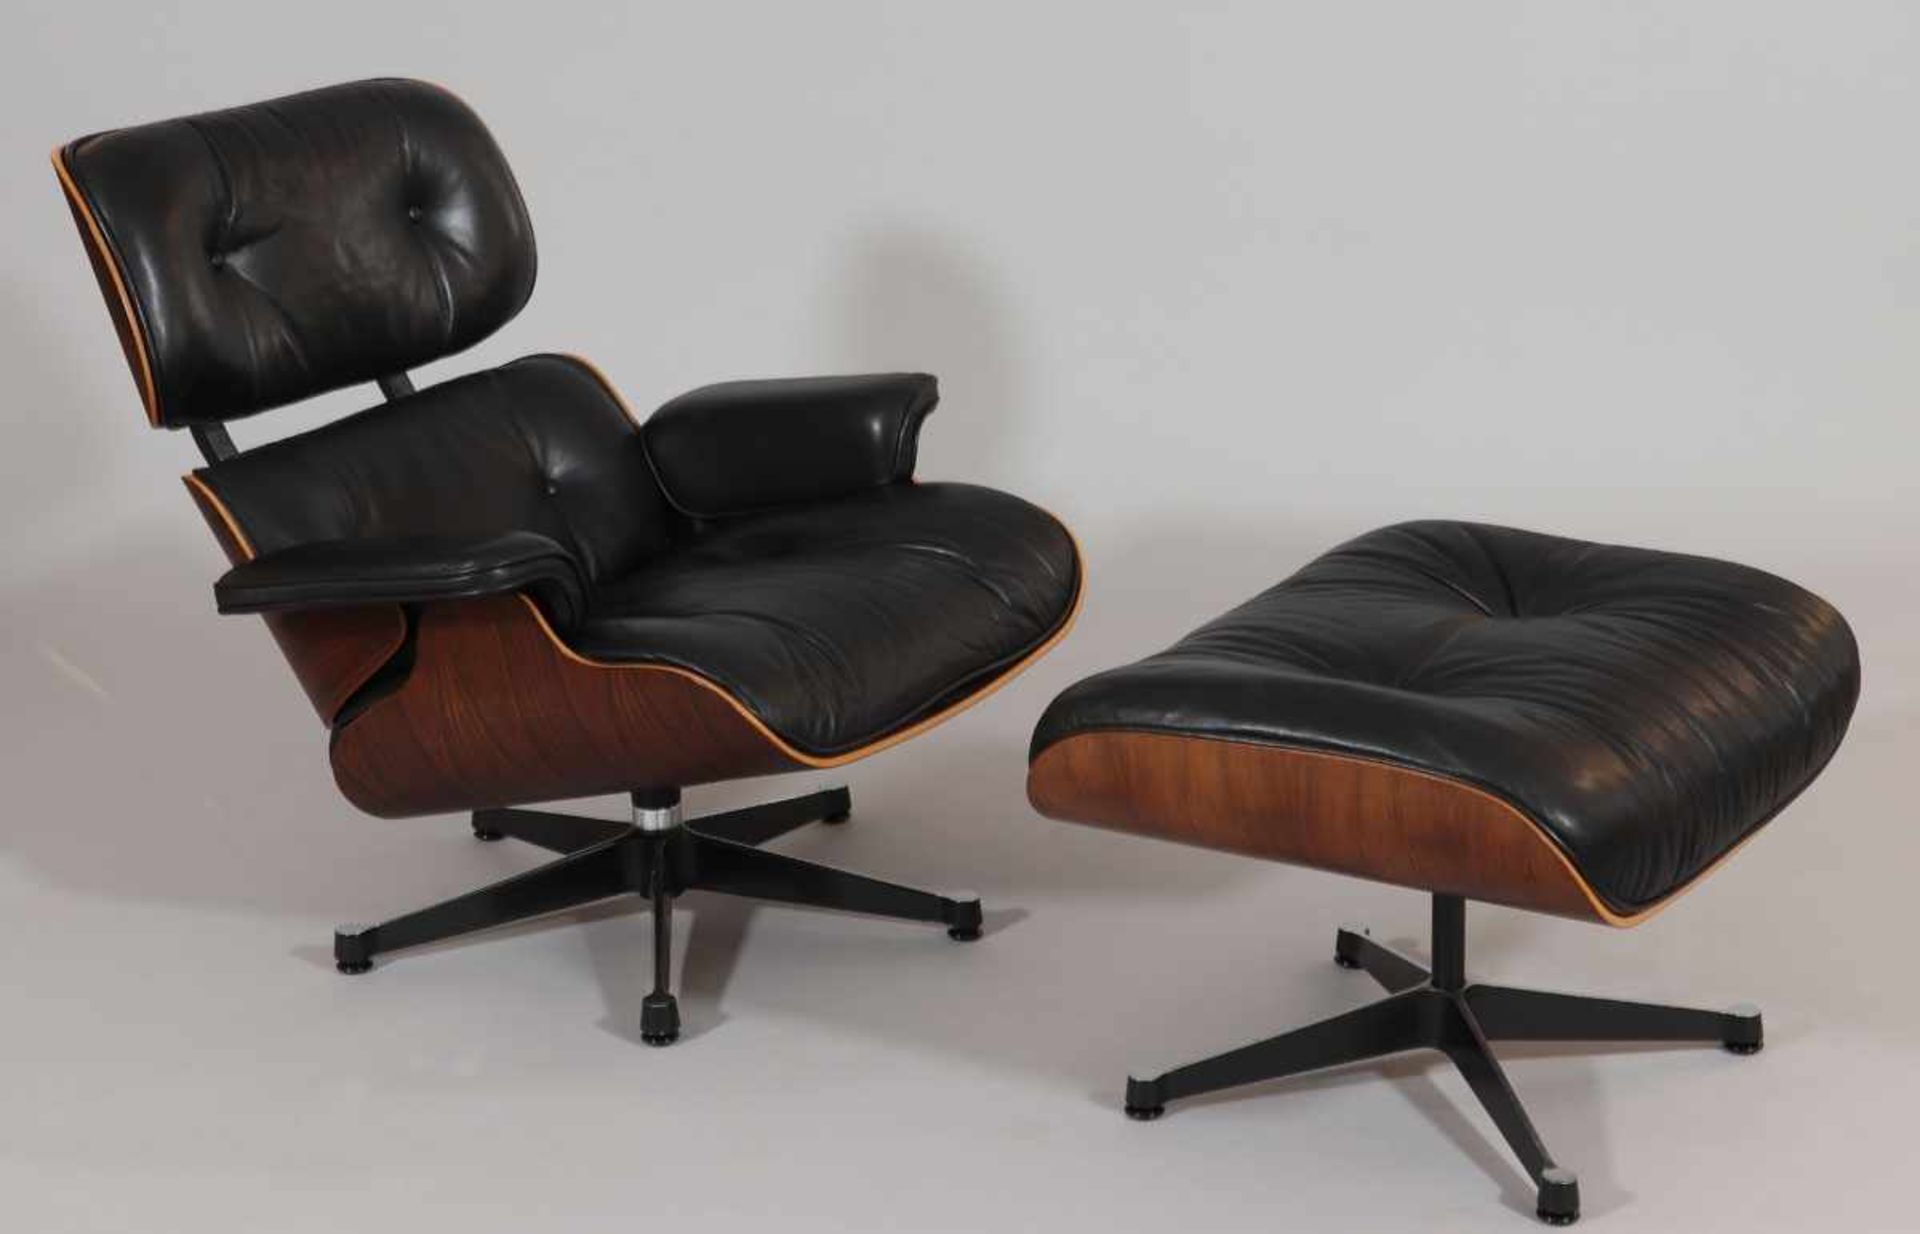 Lounge Chair mit OttomaneVitra/Schweiz. Entwurf: Ray und Charles Eames. Palisander. Leder. 40/80 x